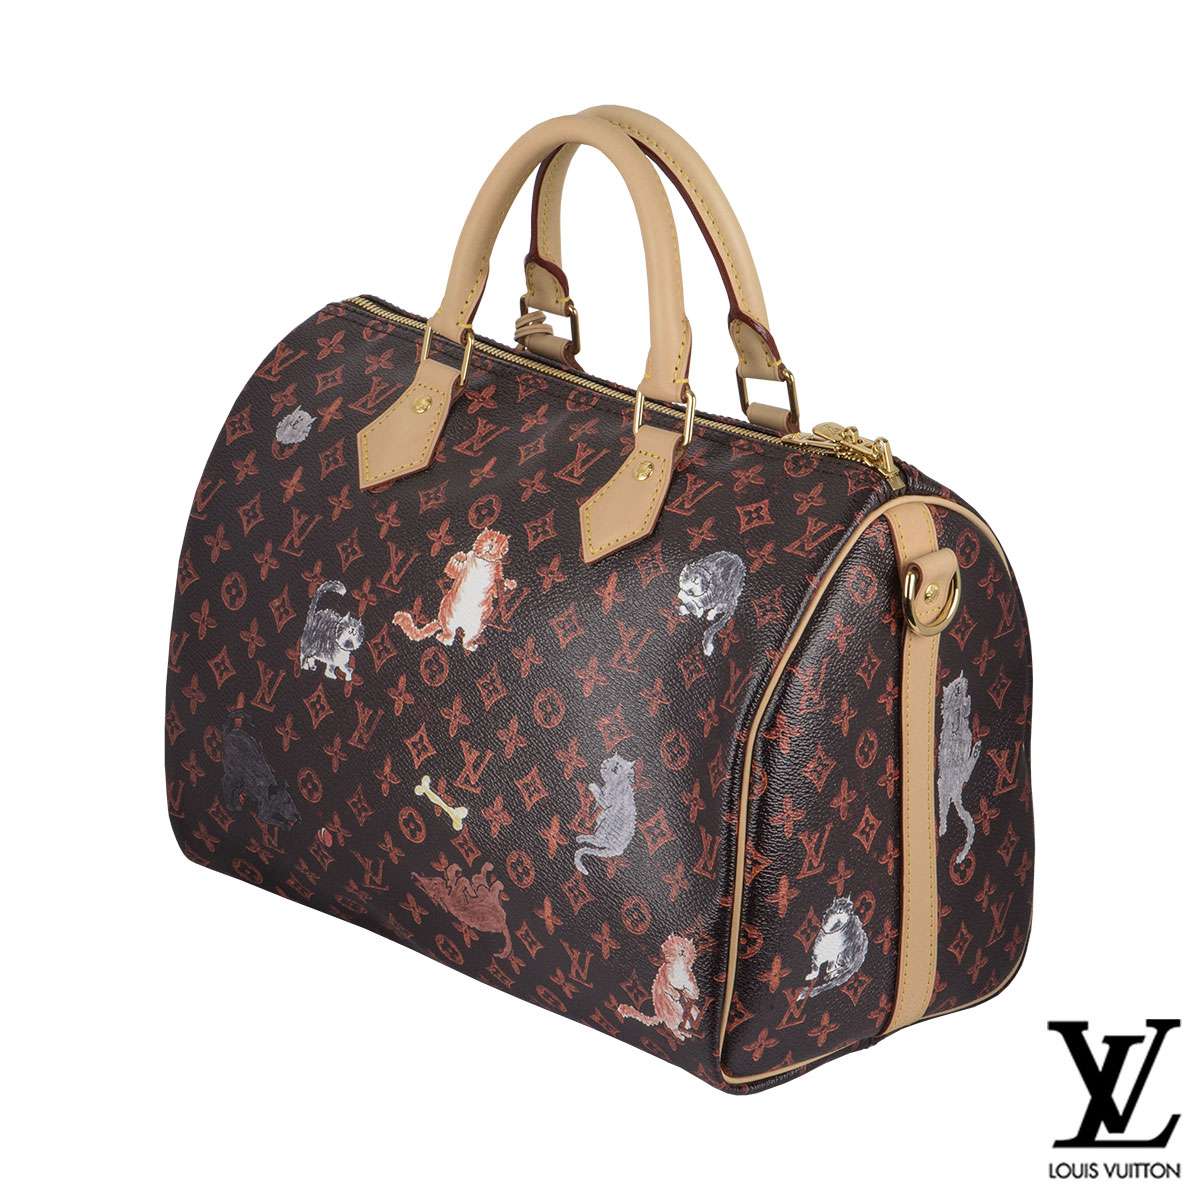 Louis Vuitton Speedy Bandouliere Bag Limited Edition Grace Coddington  Catogram Canvas 30 Brown 569911